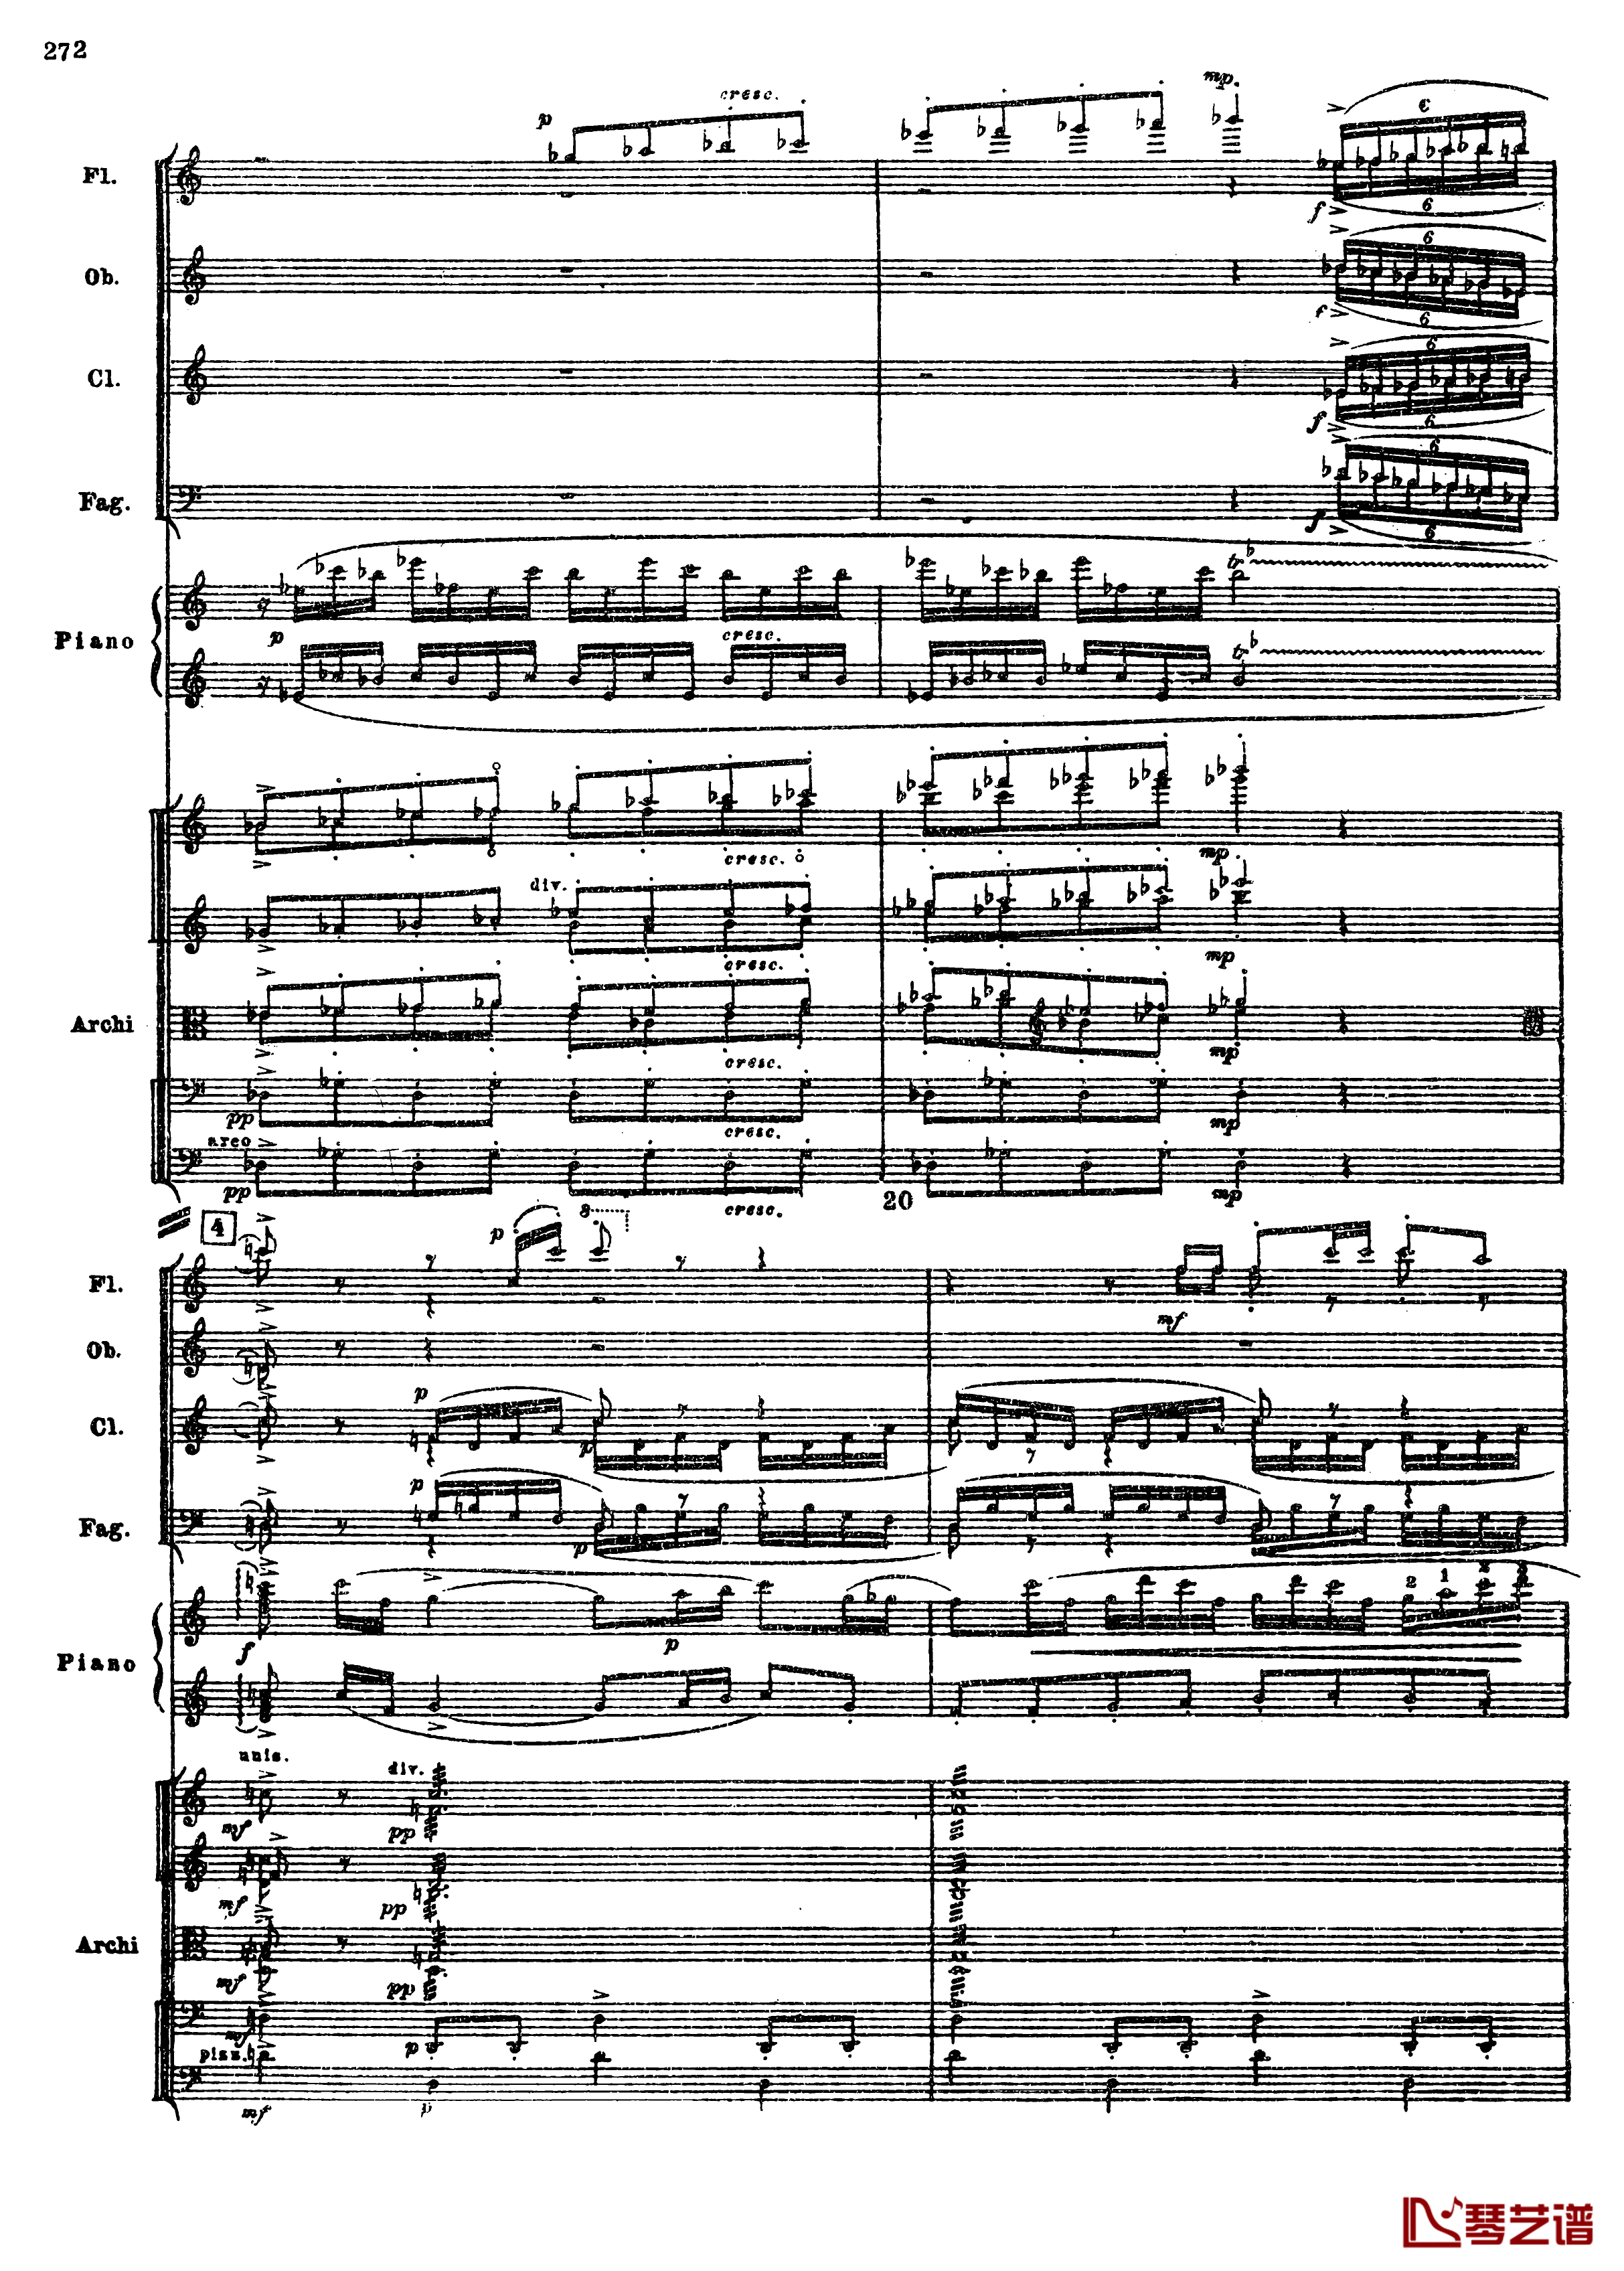 普罗科菲耶夫第三钢琴协奏曲钢琴谱-总谱-普罗科非耶夫4